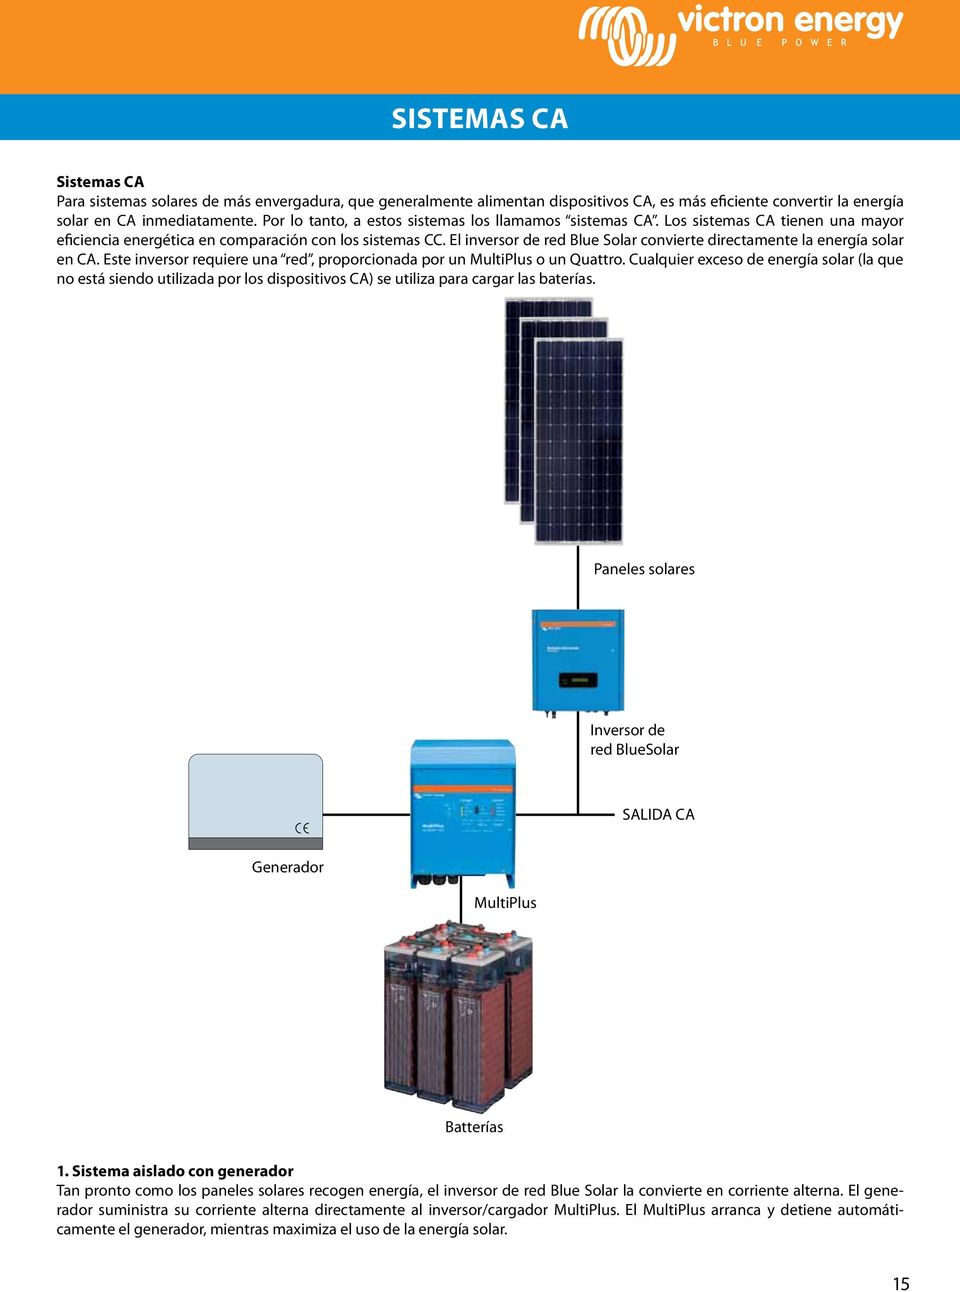 El inversor de red Blue Solar convierte directamente la energía solar en CA. Este inversor requiere una red, proporcionada por un MultiPlus o un Quattro.